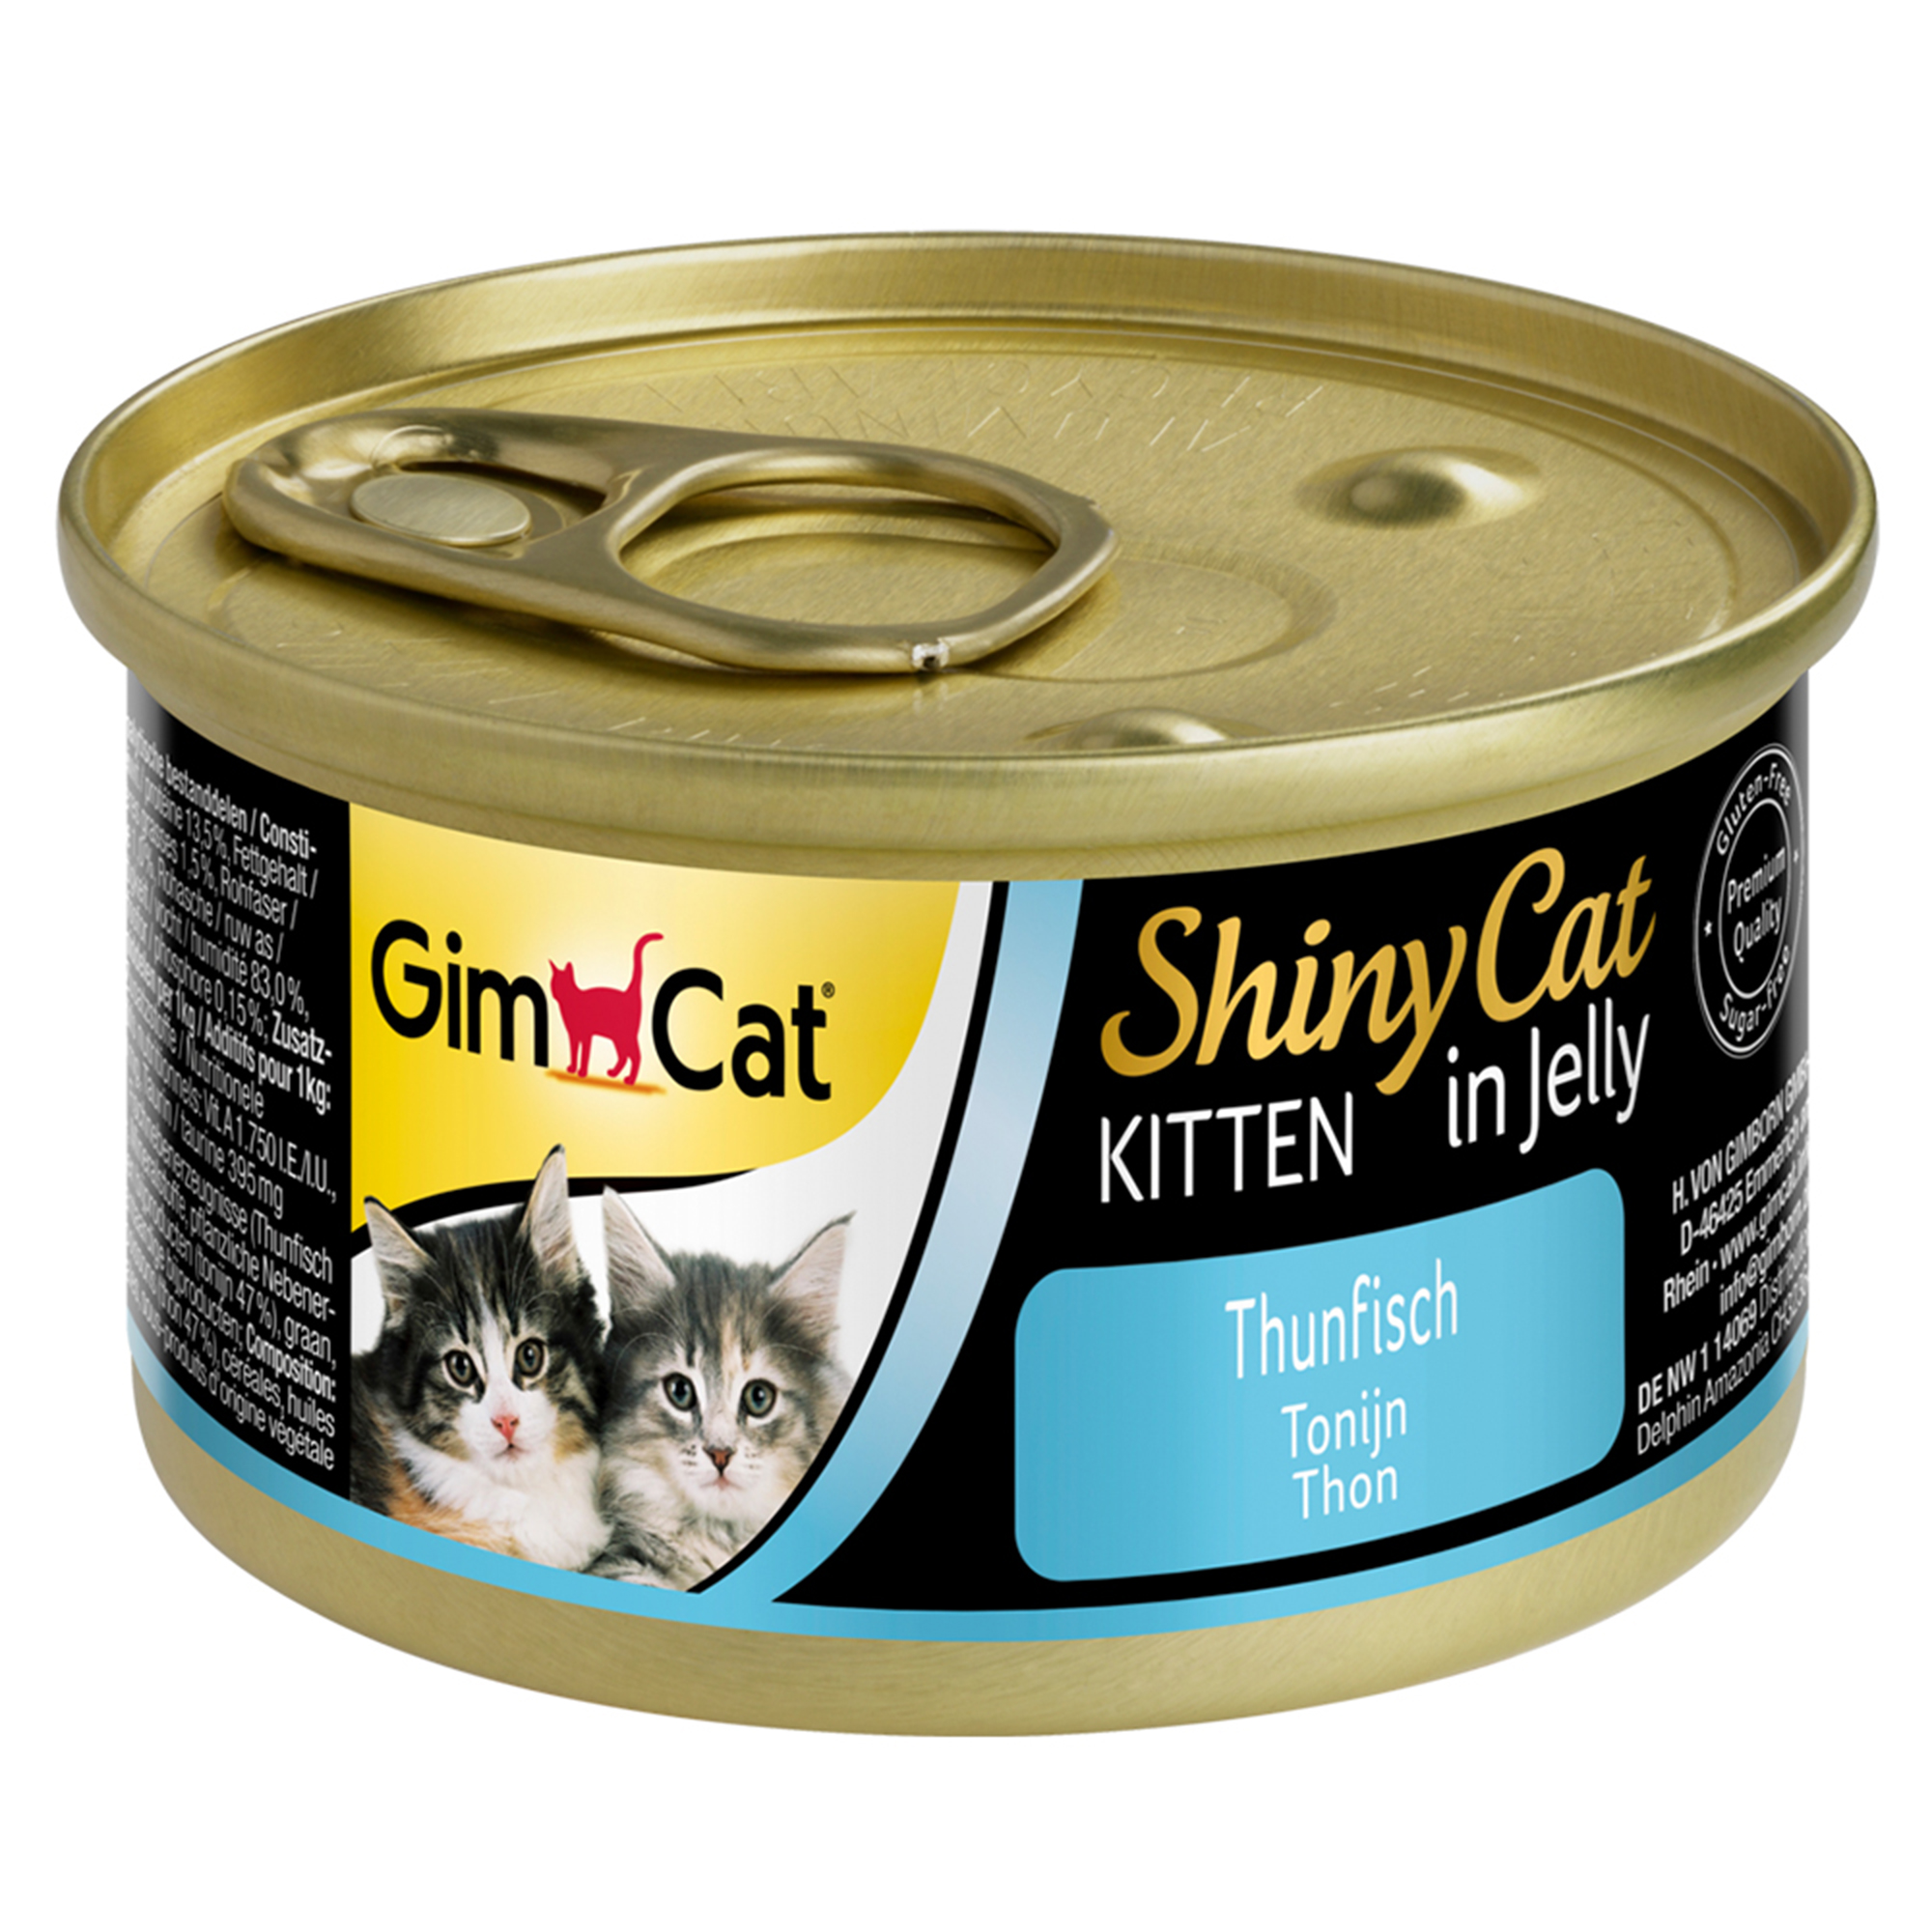 GimCat ShinyCat Kitten in Jelly 70g